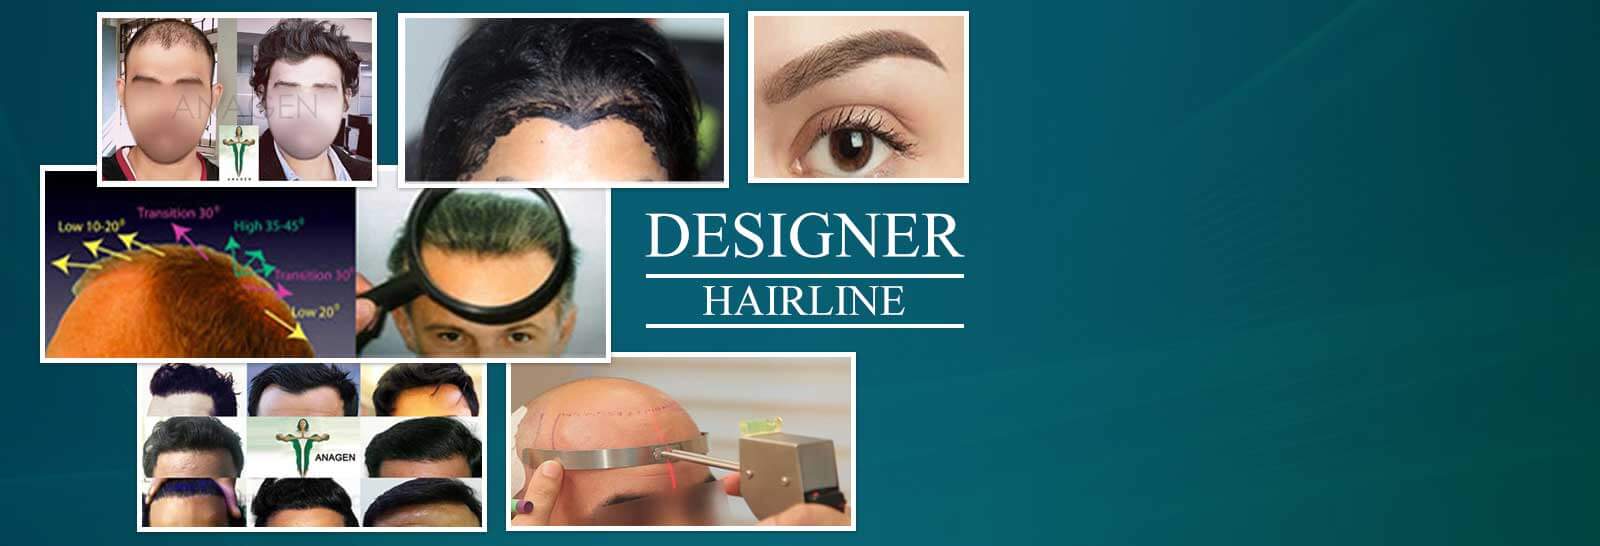 Designer Hairline